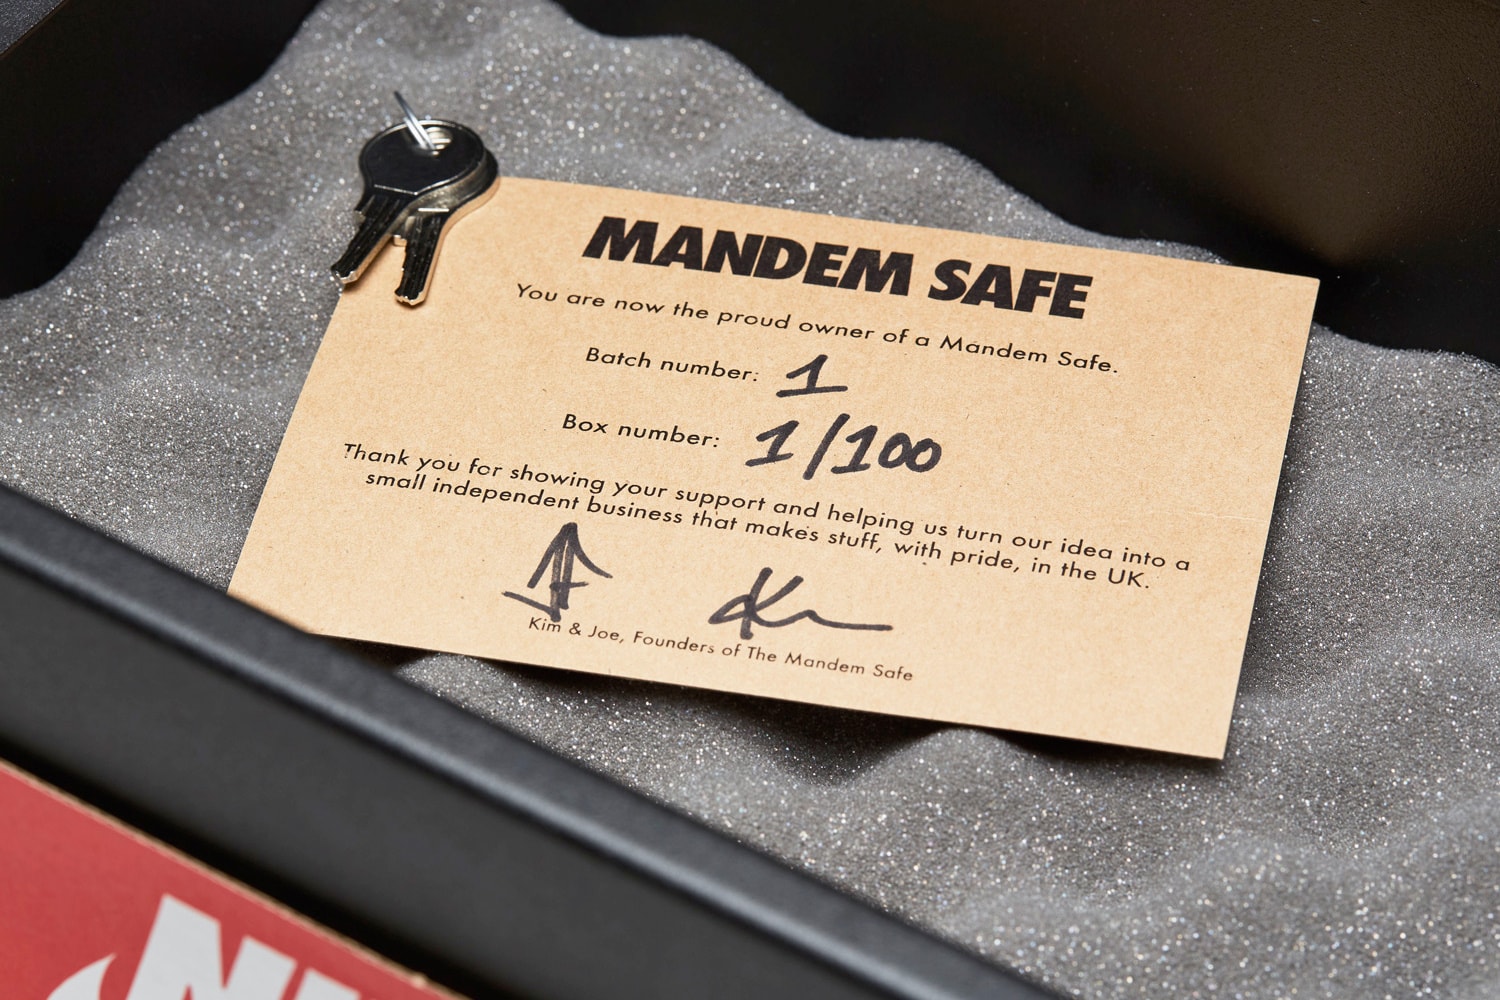 the mandem safe shoe box launch